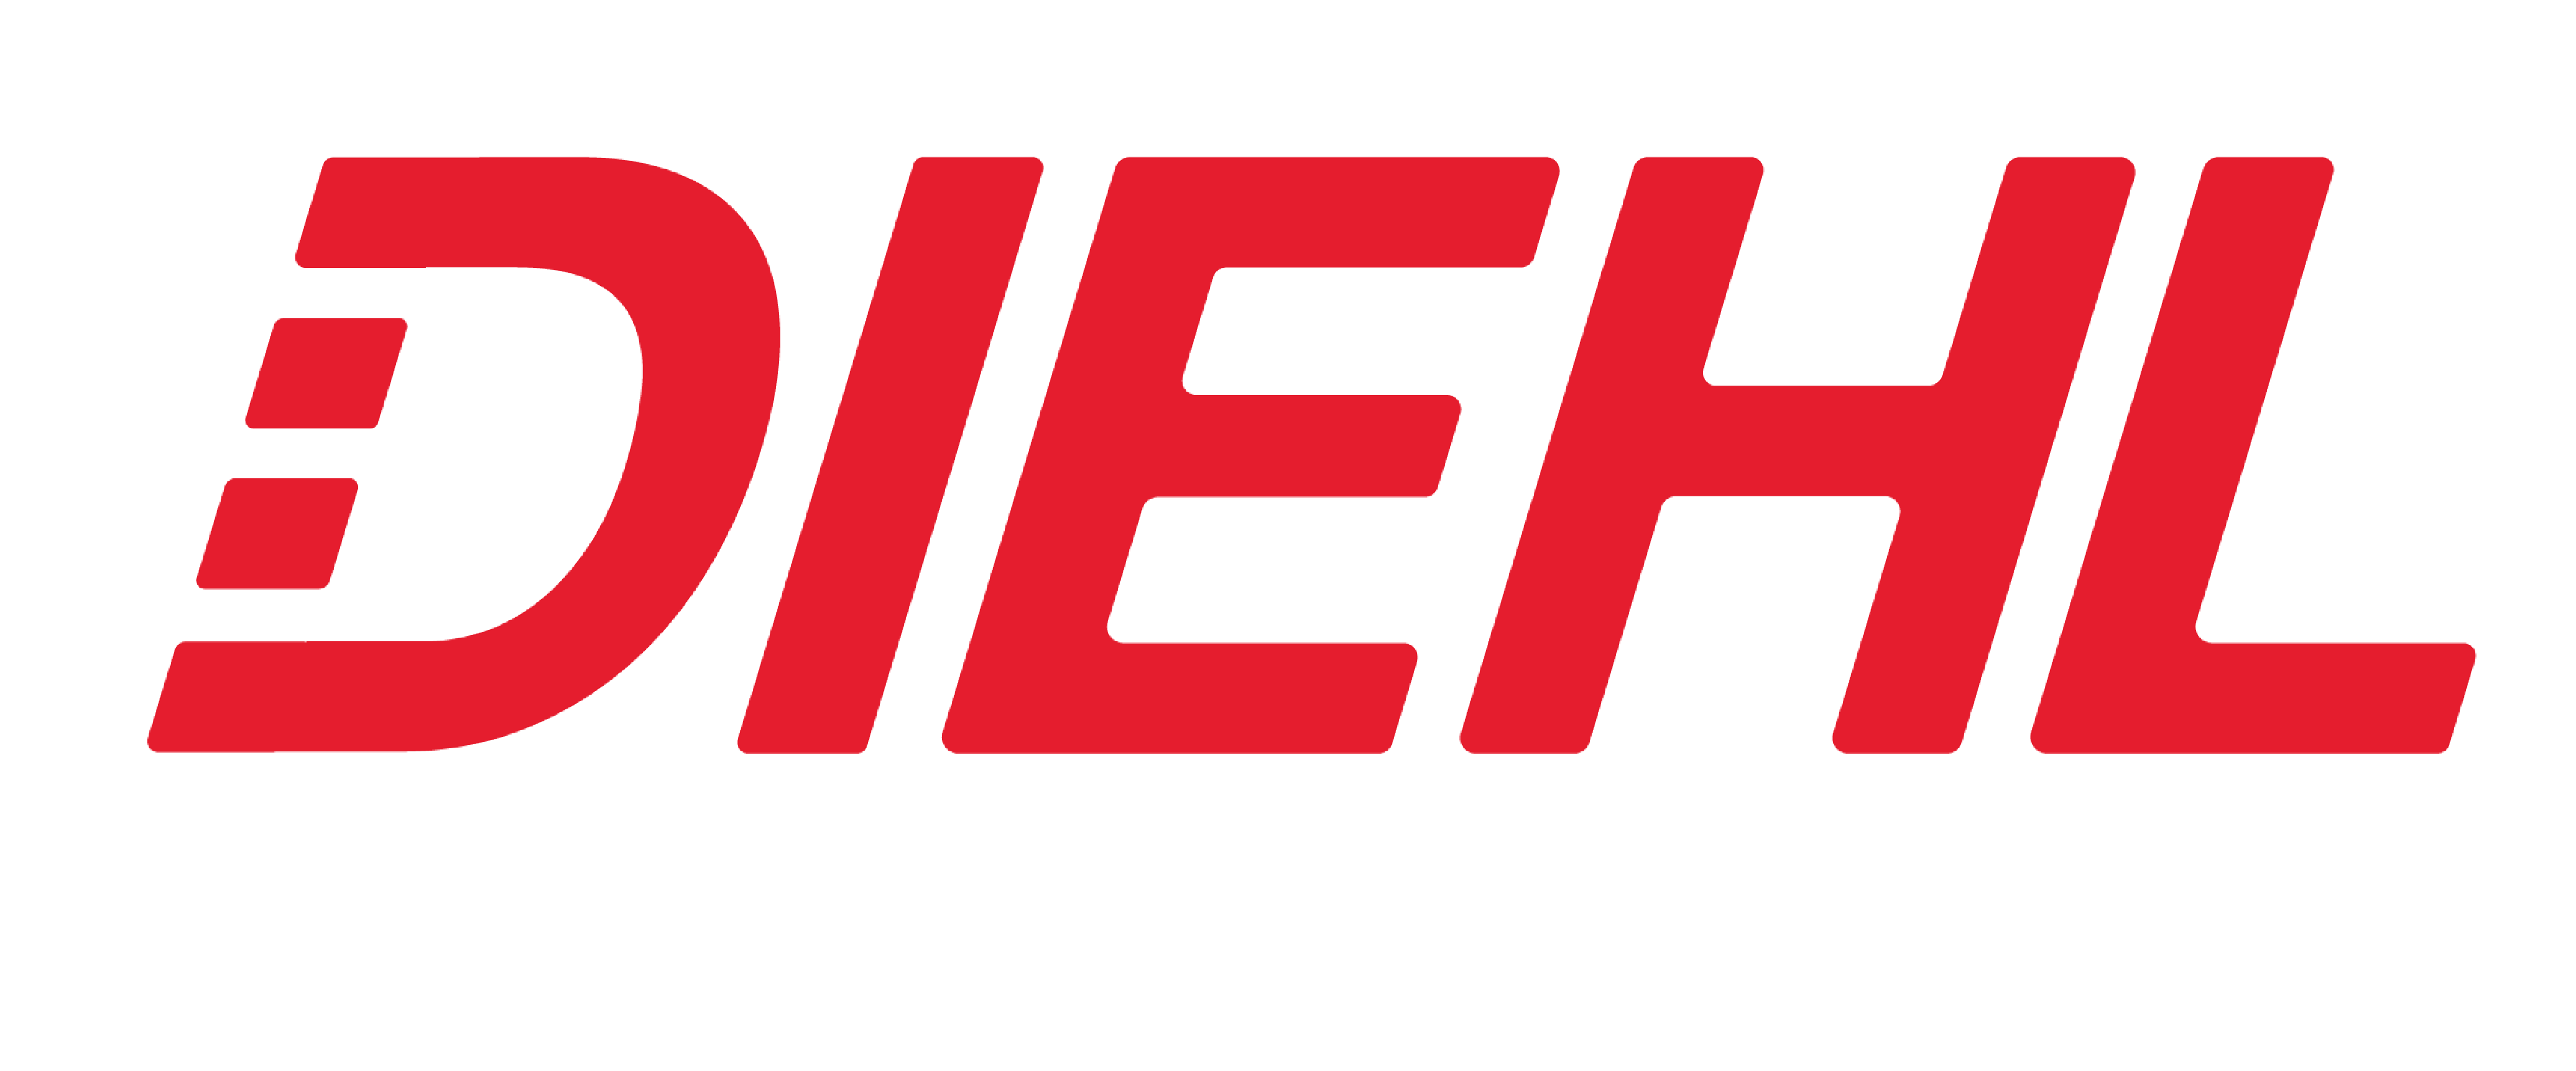 diehl tire center logo